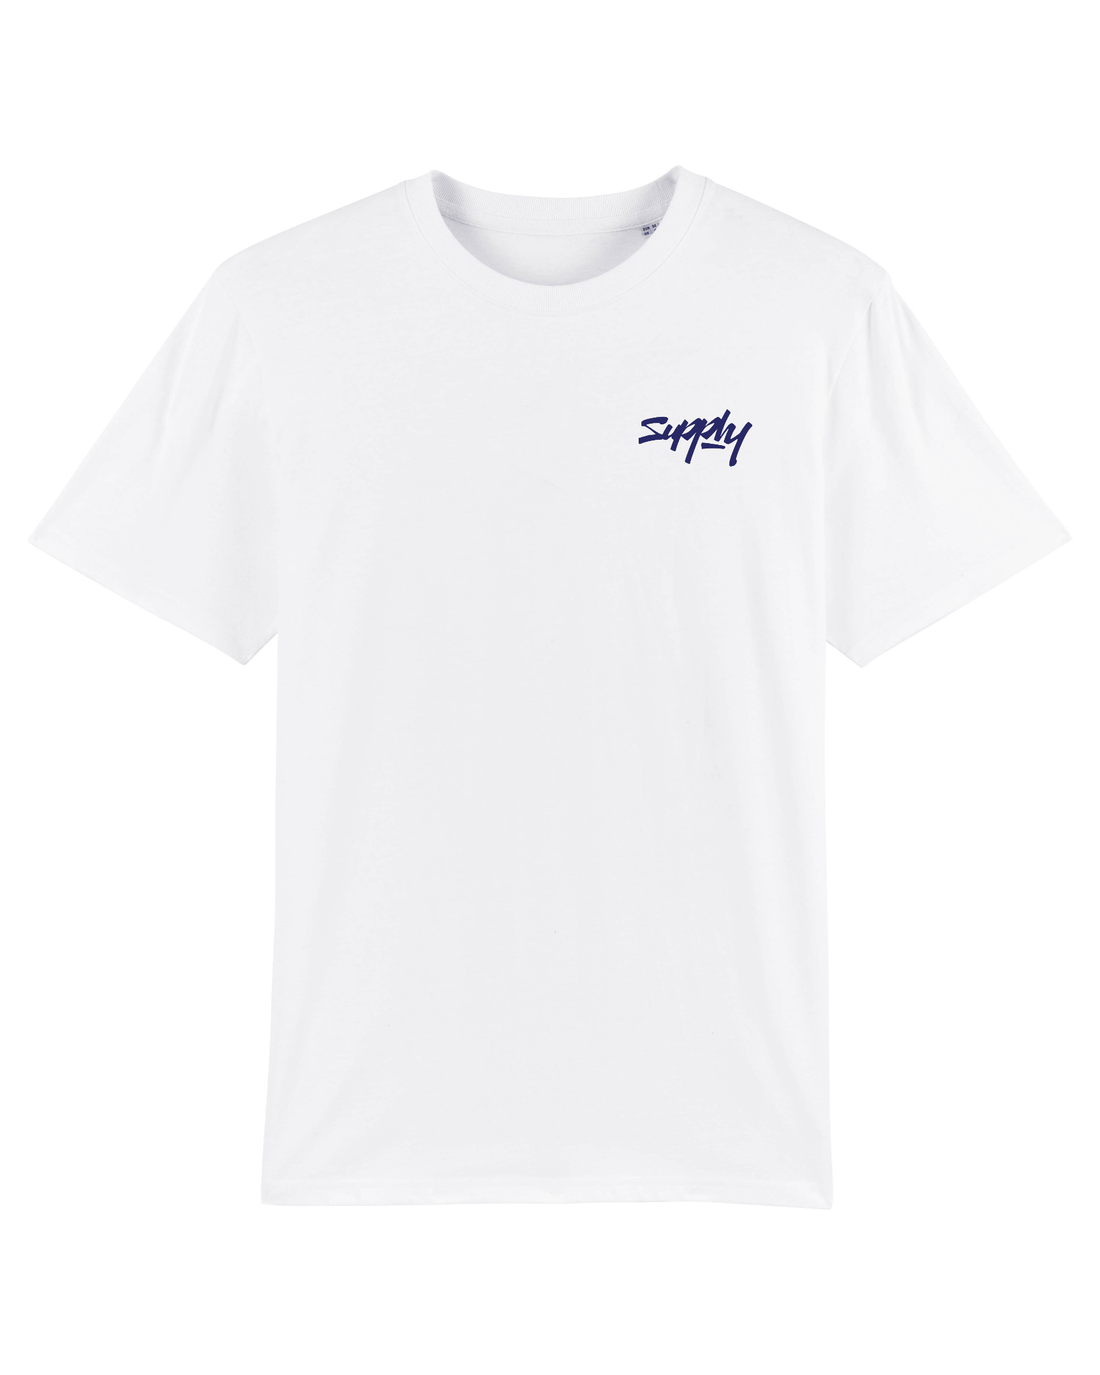 White Skater T-Shirt, Surf Life Front Print